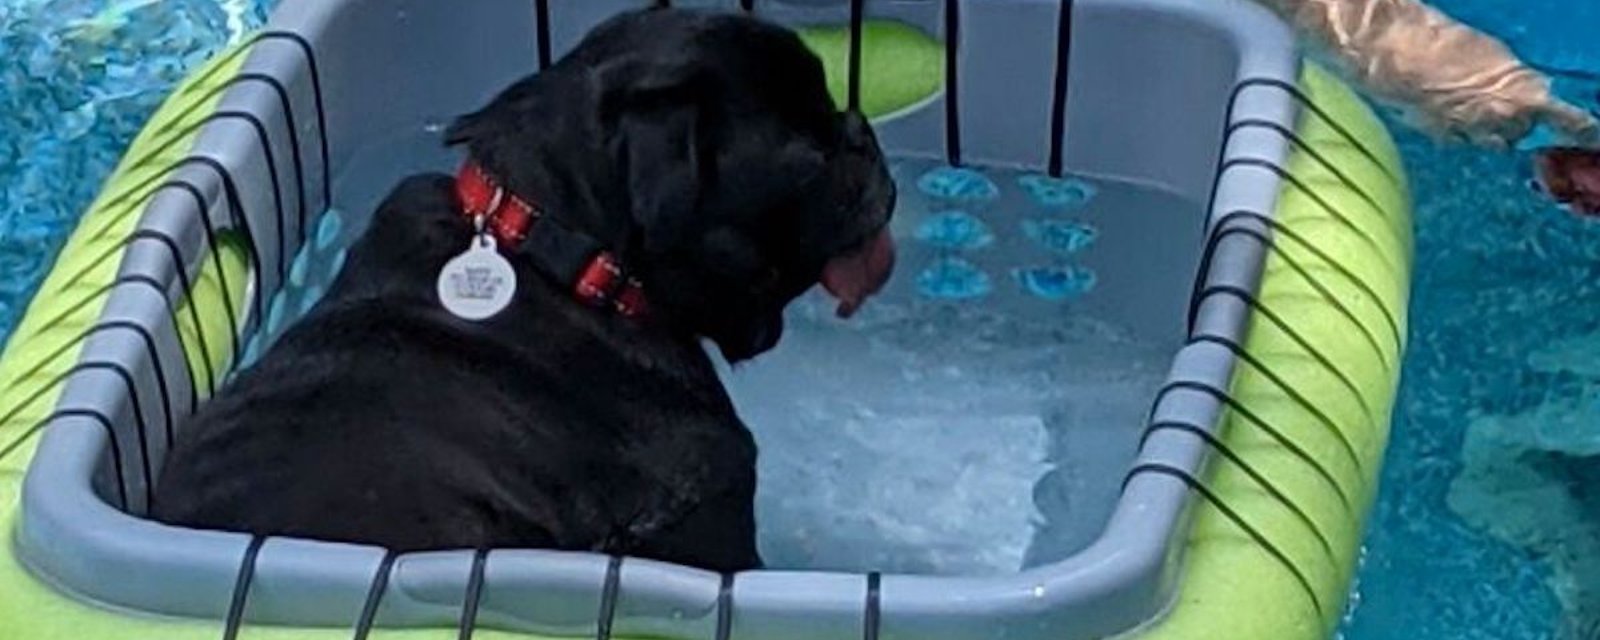 Des gens fabriquent des paniers flottants pour leurs chiens dans la piscine